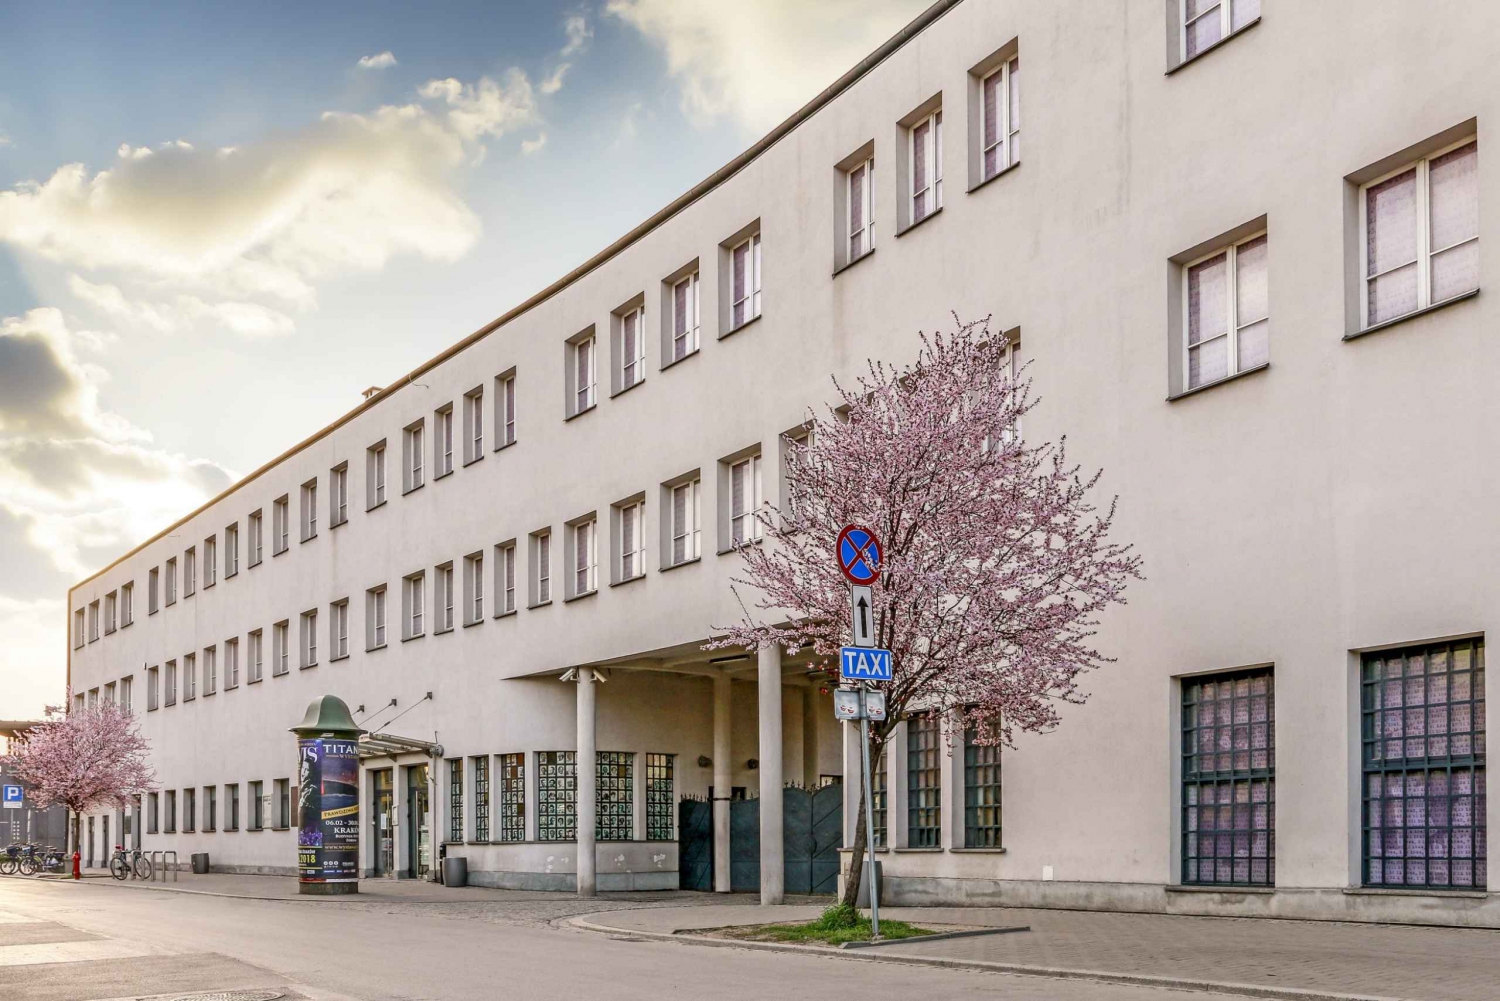 Krakova: Schindlerin tehtaan kiertoajelu: Kazimierz golfkärryllä ja Schindlerin tehtaan kierros.